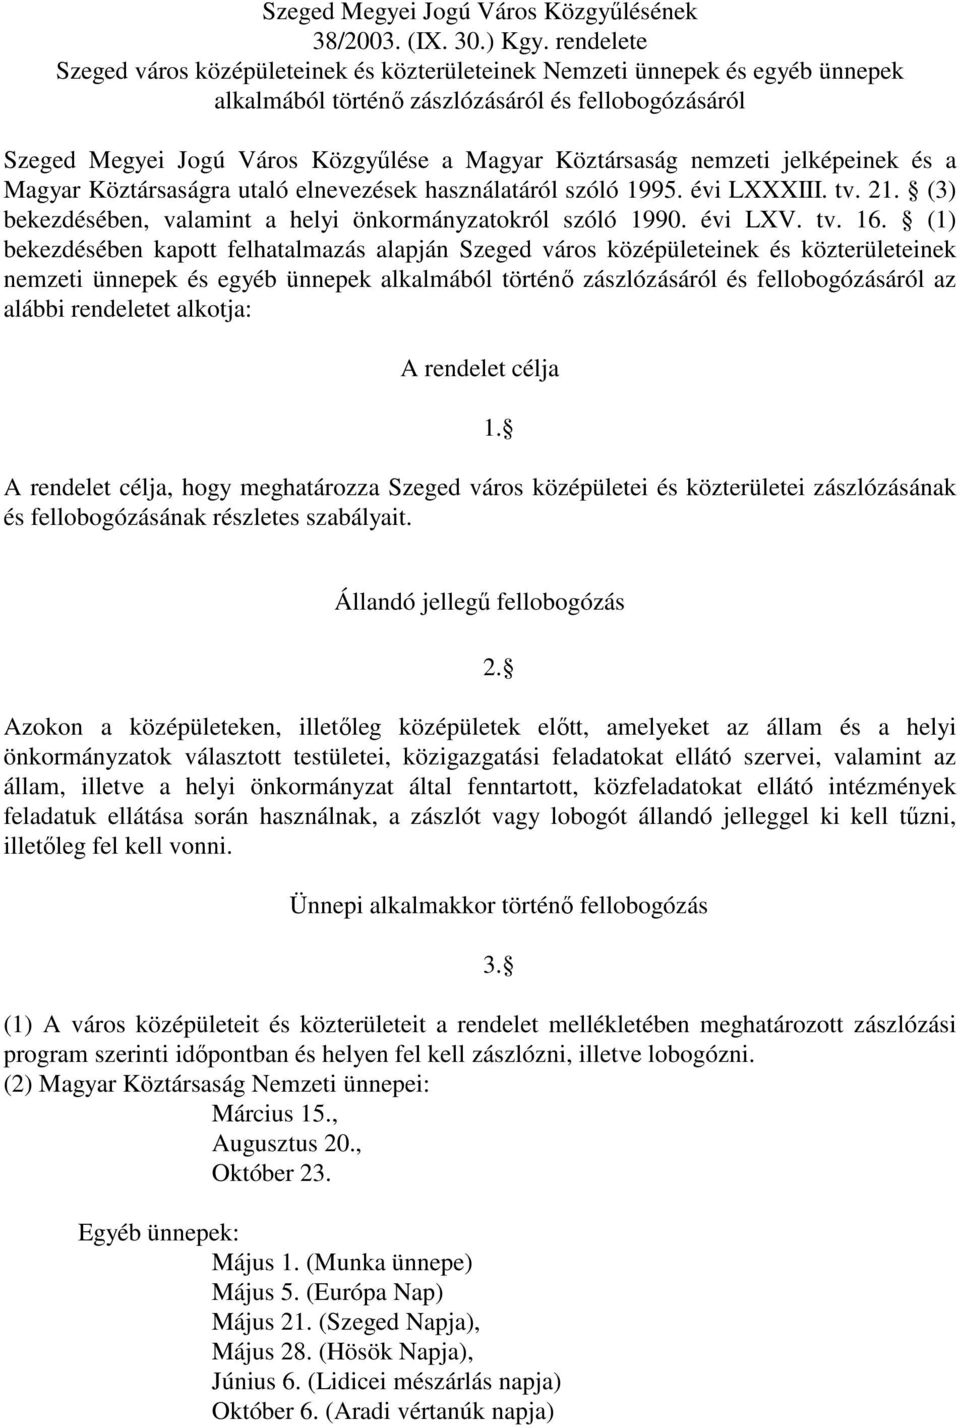 és a Magyar Köztársaságra utaló elnevezések használatáról szóló 1995. évi LXXXIII. tv. 21. (3) bekezdésében, valamint a helyi önkormányzatokról szóló 1990. évi LXV. tv. 16.